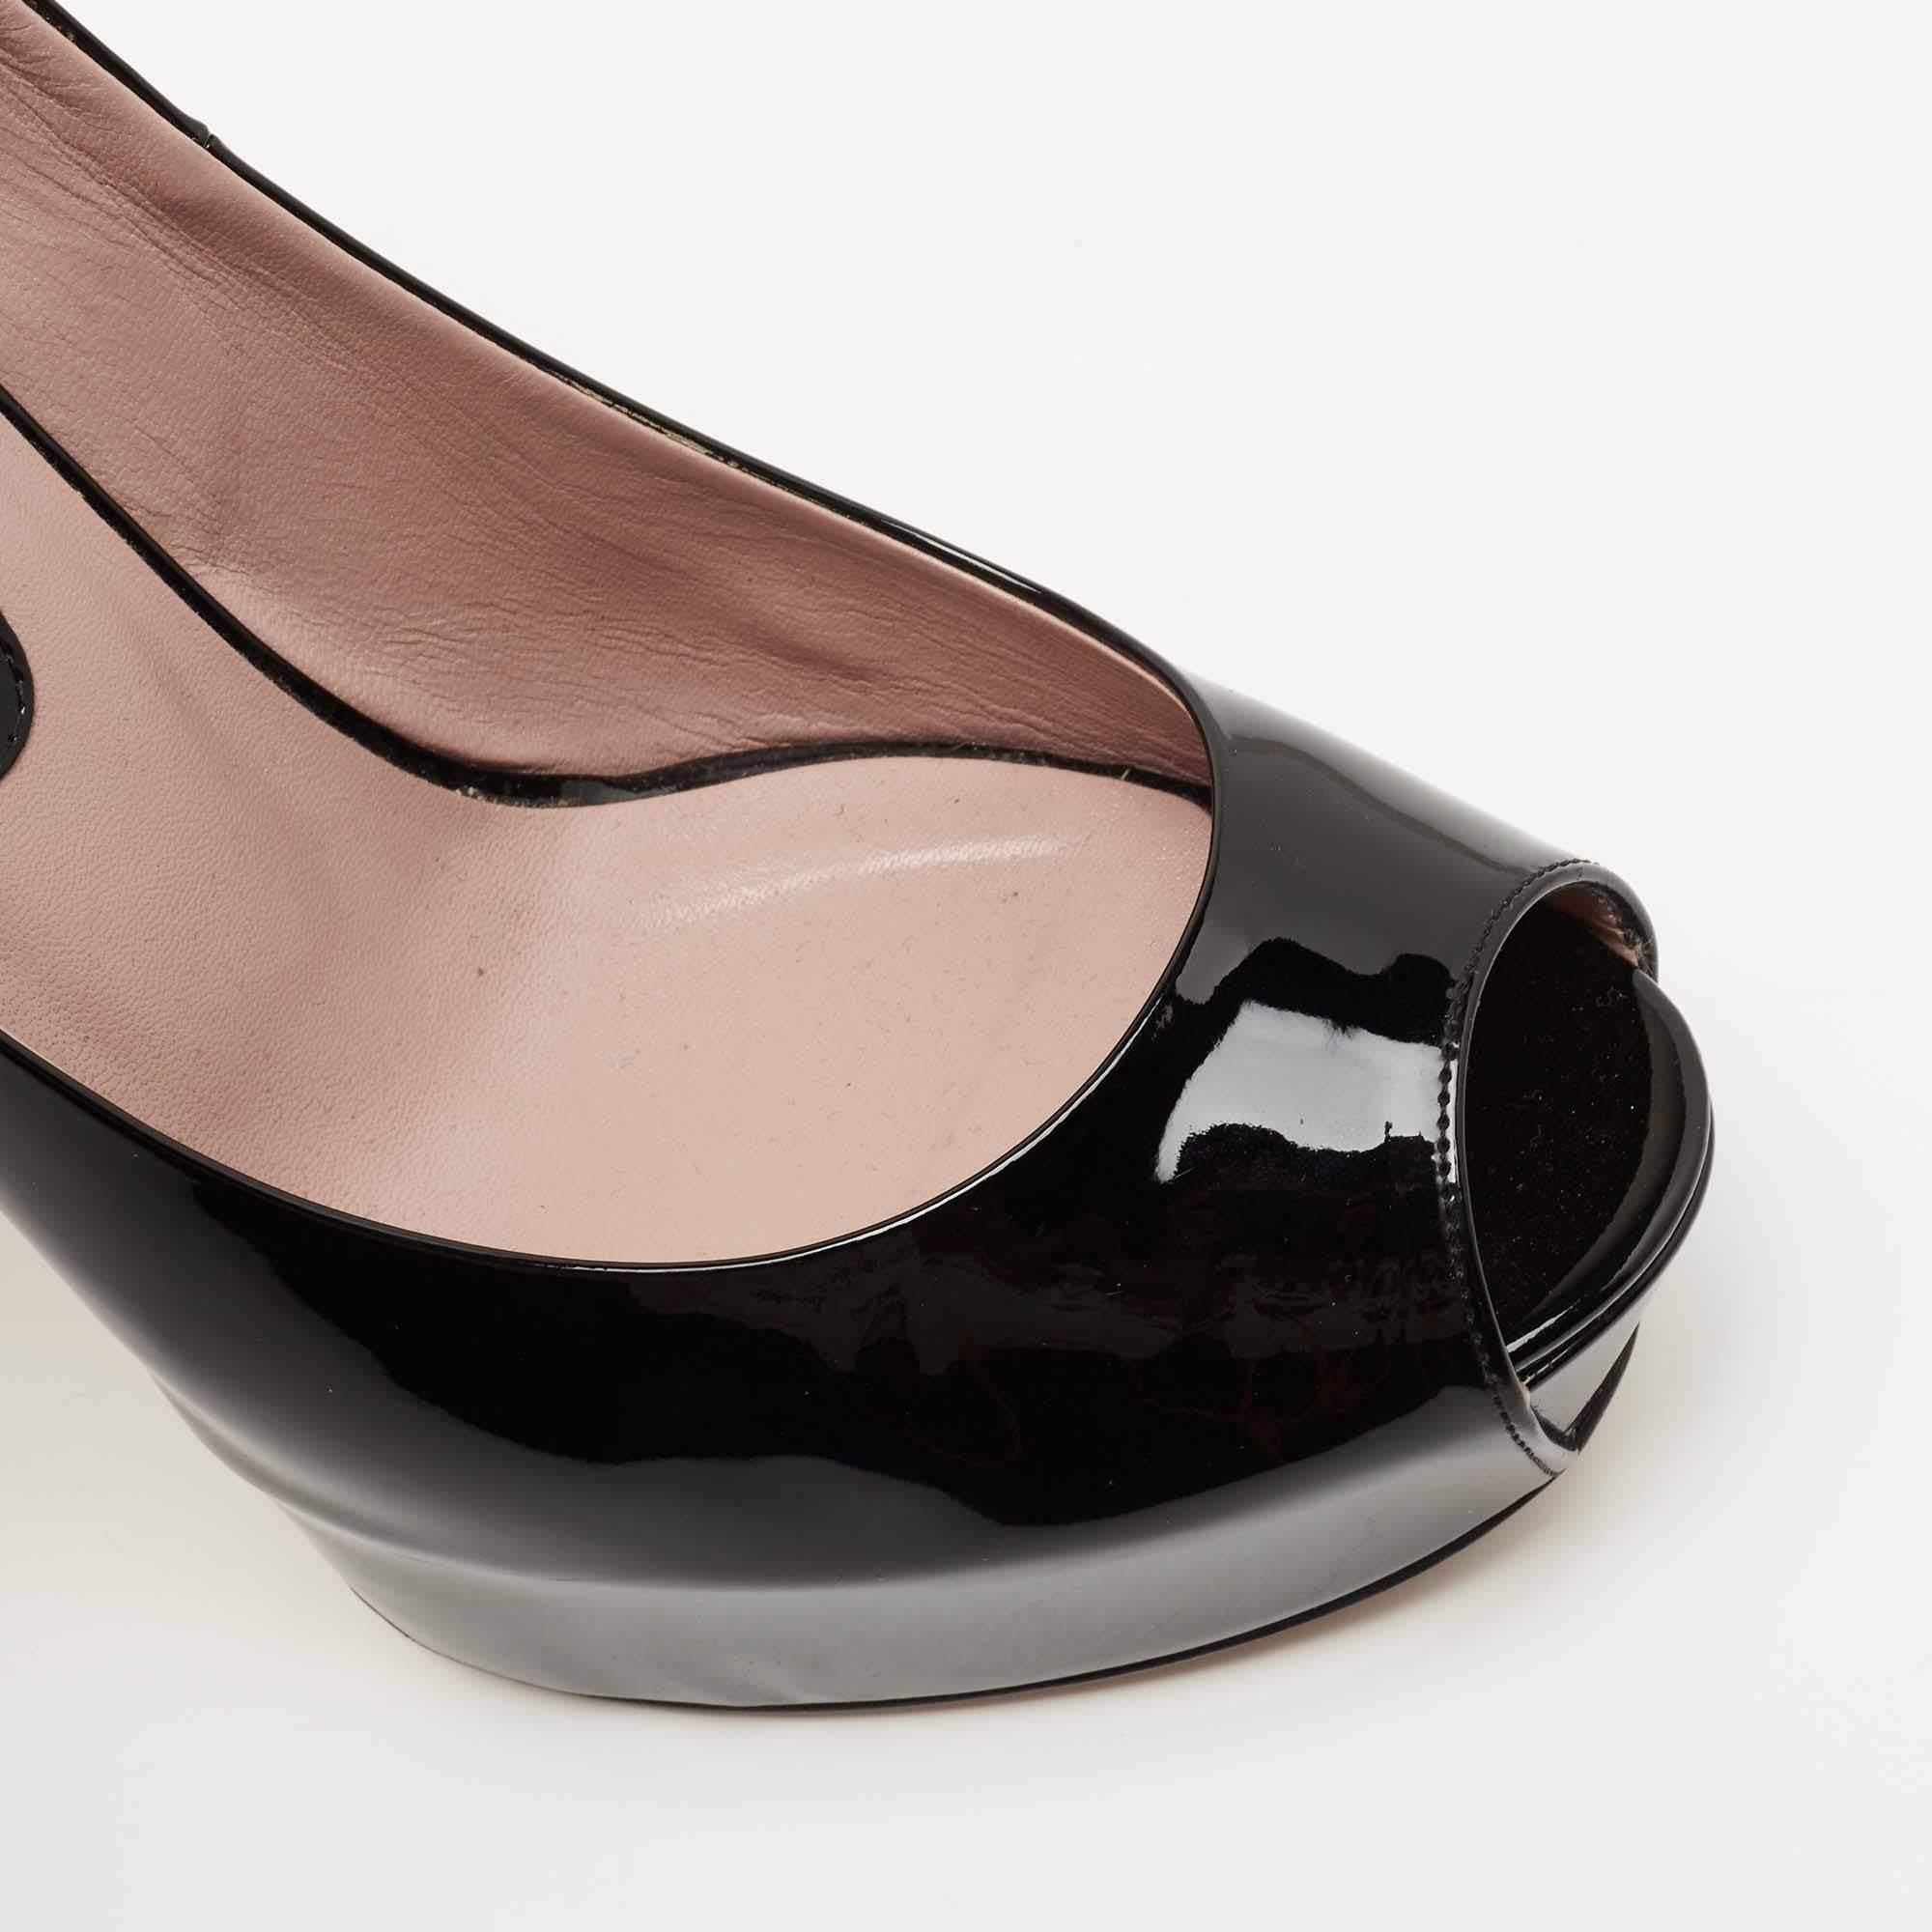 Gucci Black Patent Leather Peep Toe Platform Pumps Size 40 For Sale 2